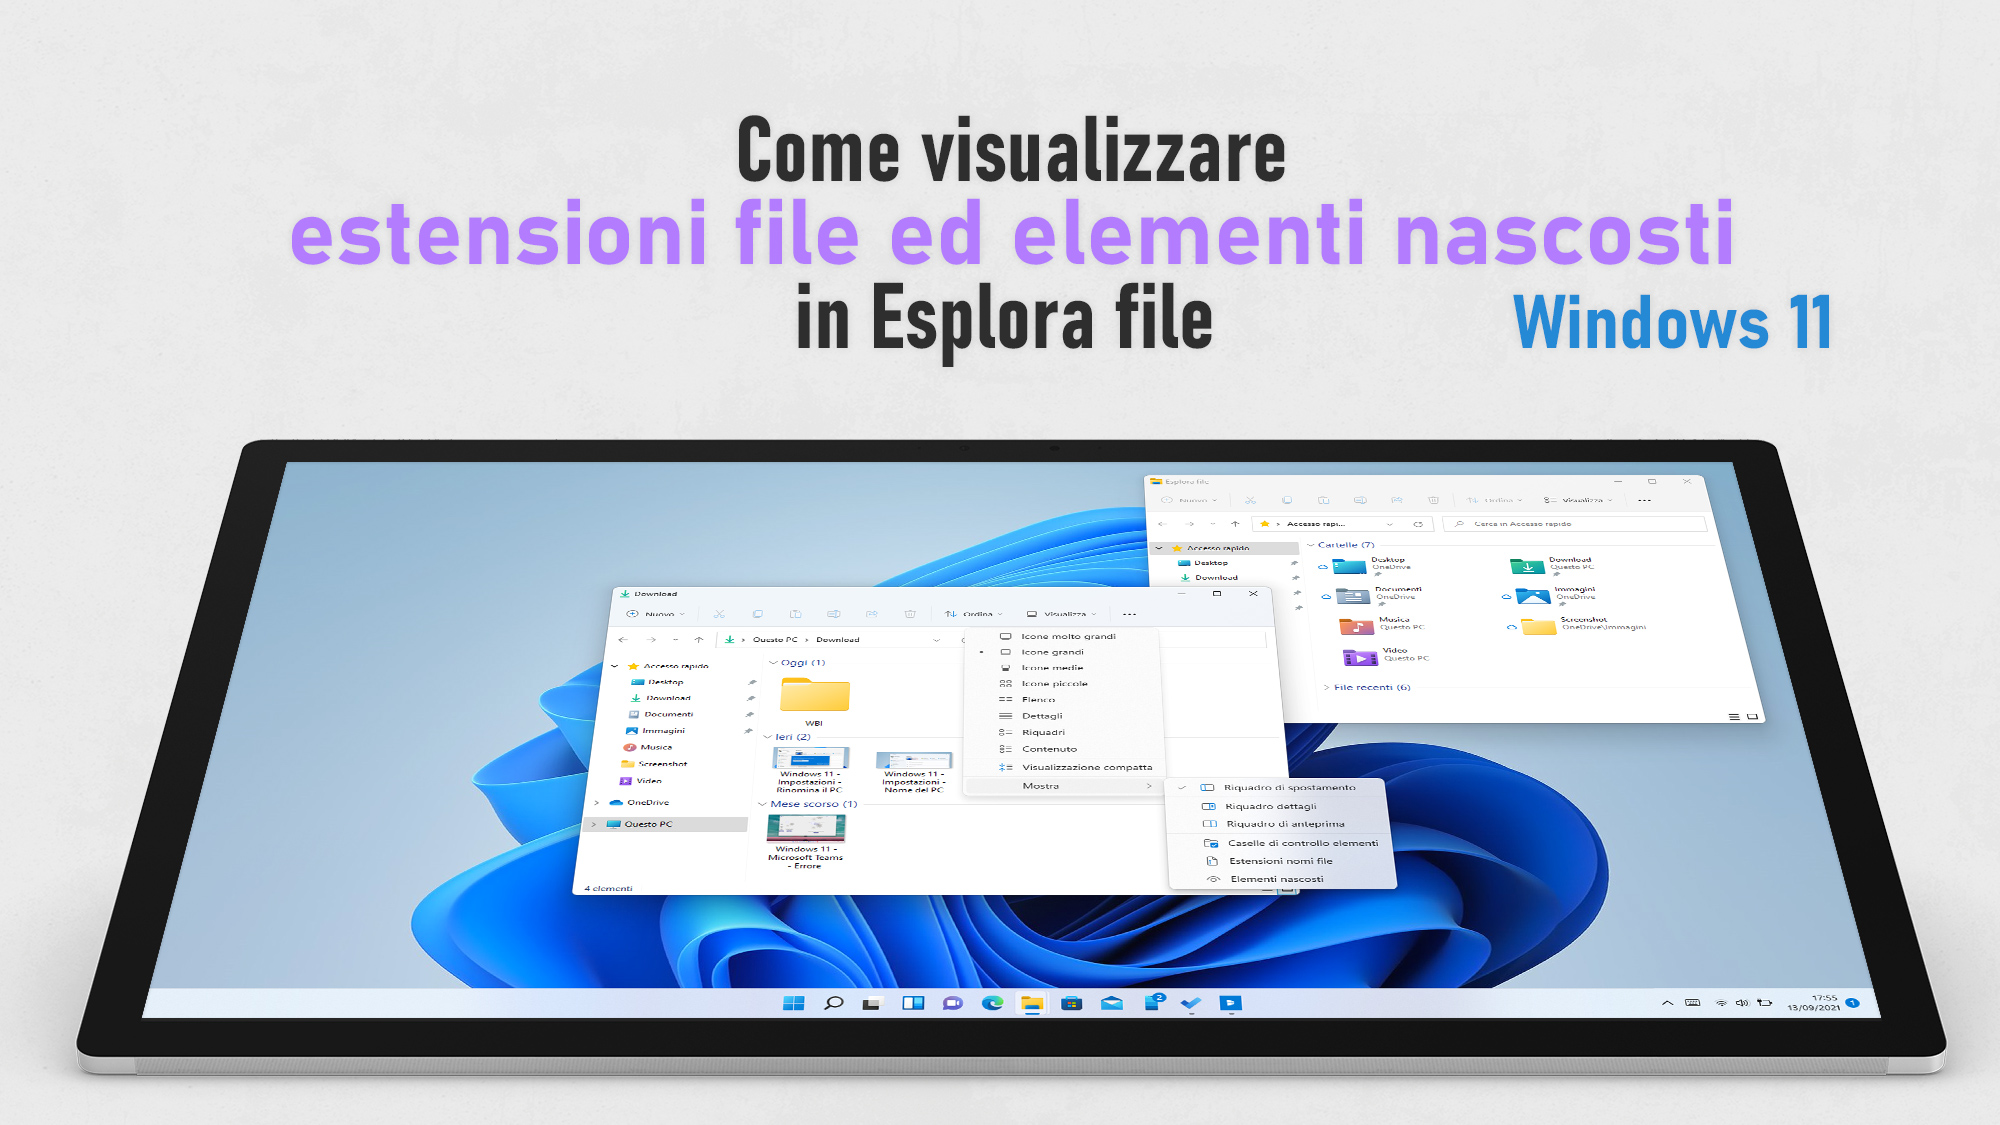 Windows 11 - Visualizzare estensione file ed elementi nascosti in Esplora file